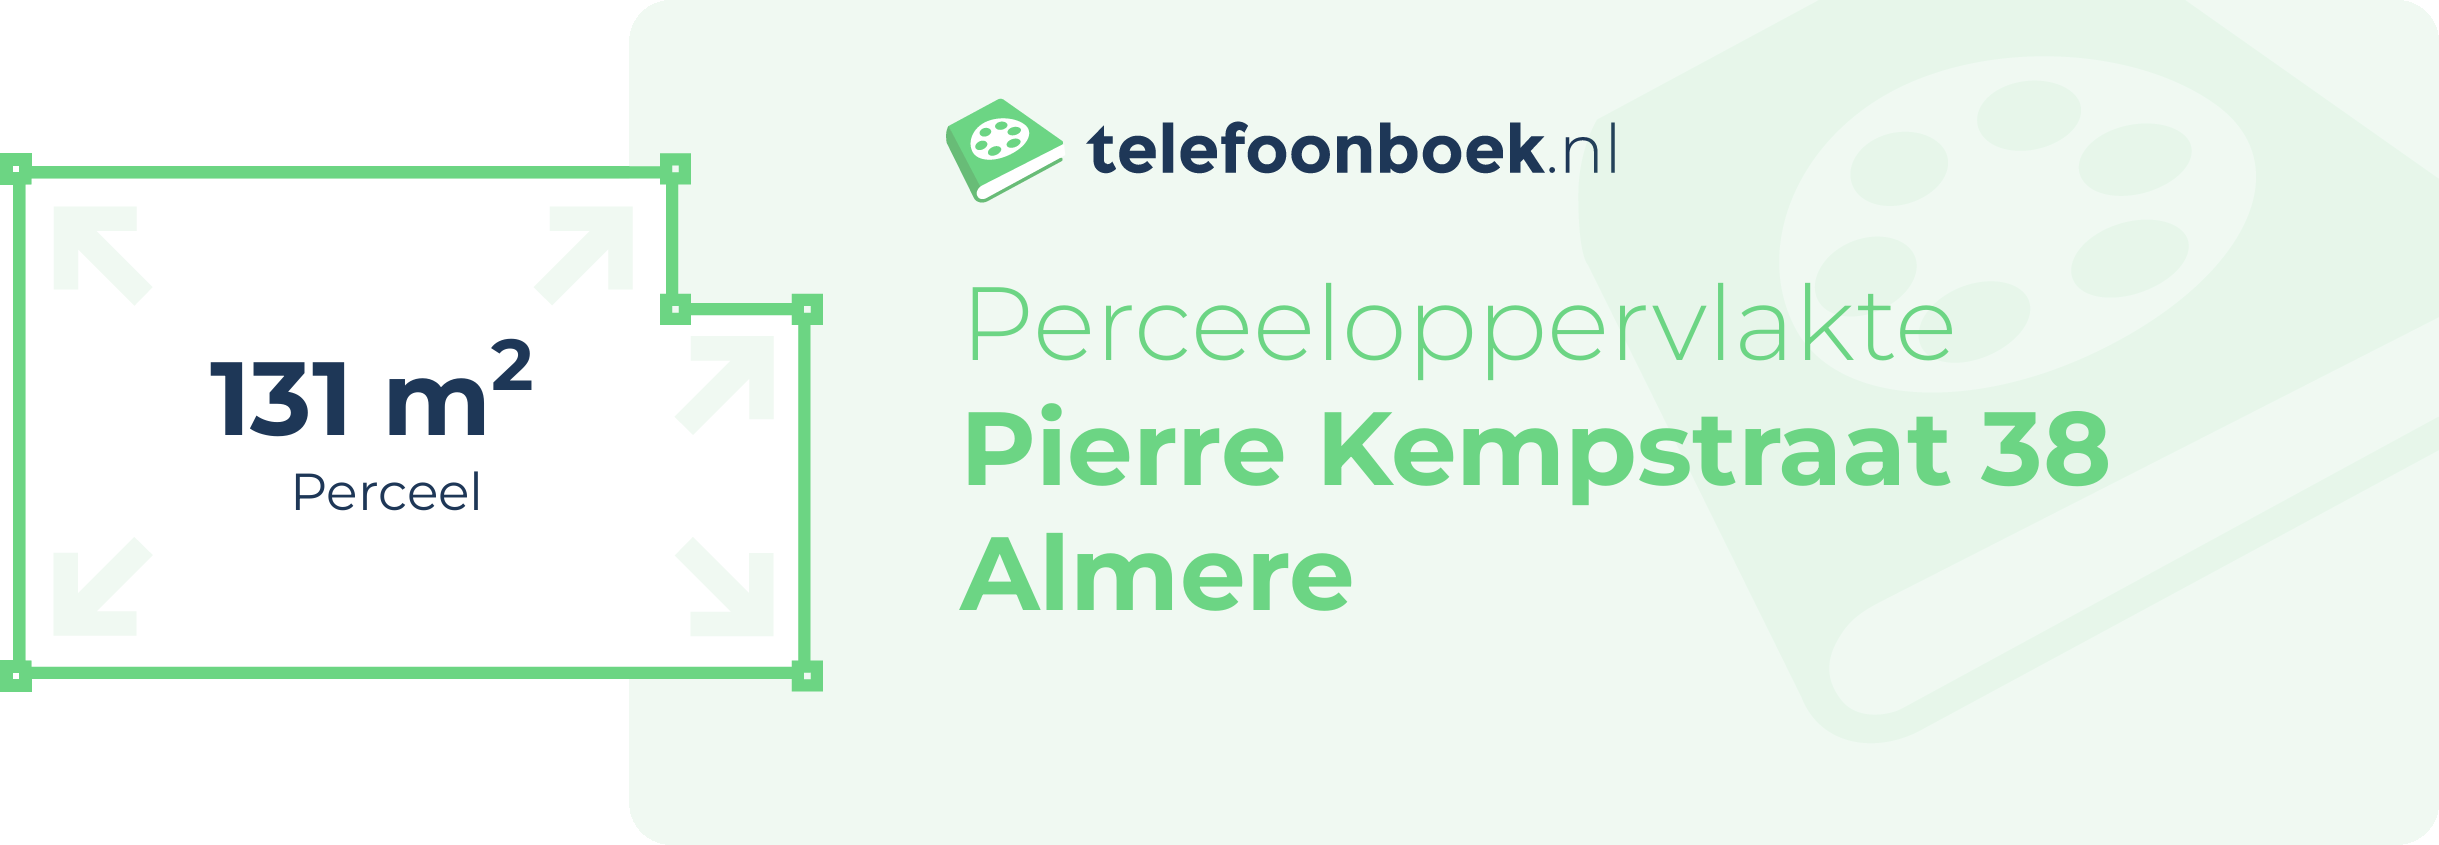 Perceeloppervlakte Pierre Kempstraat 38 Almere